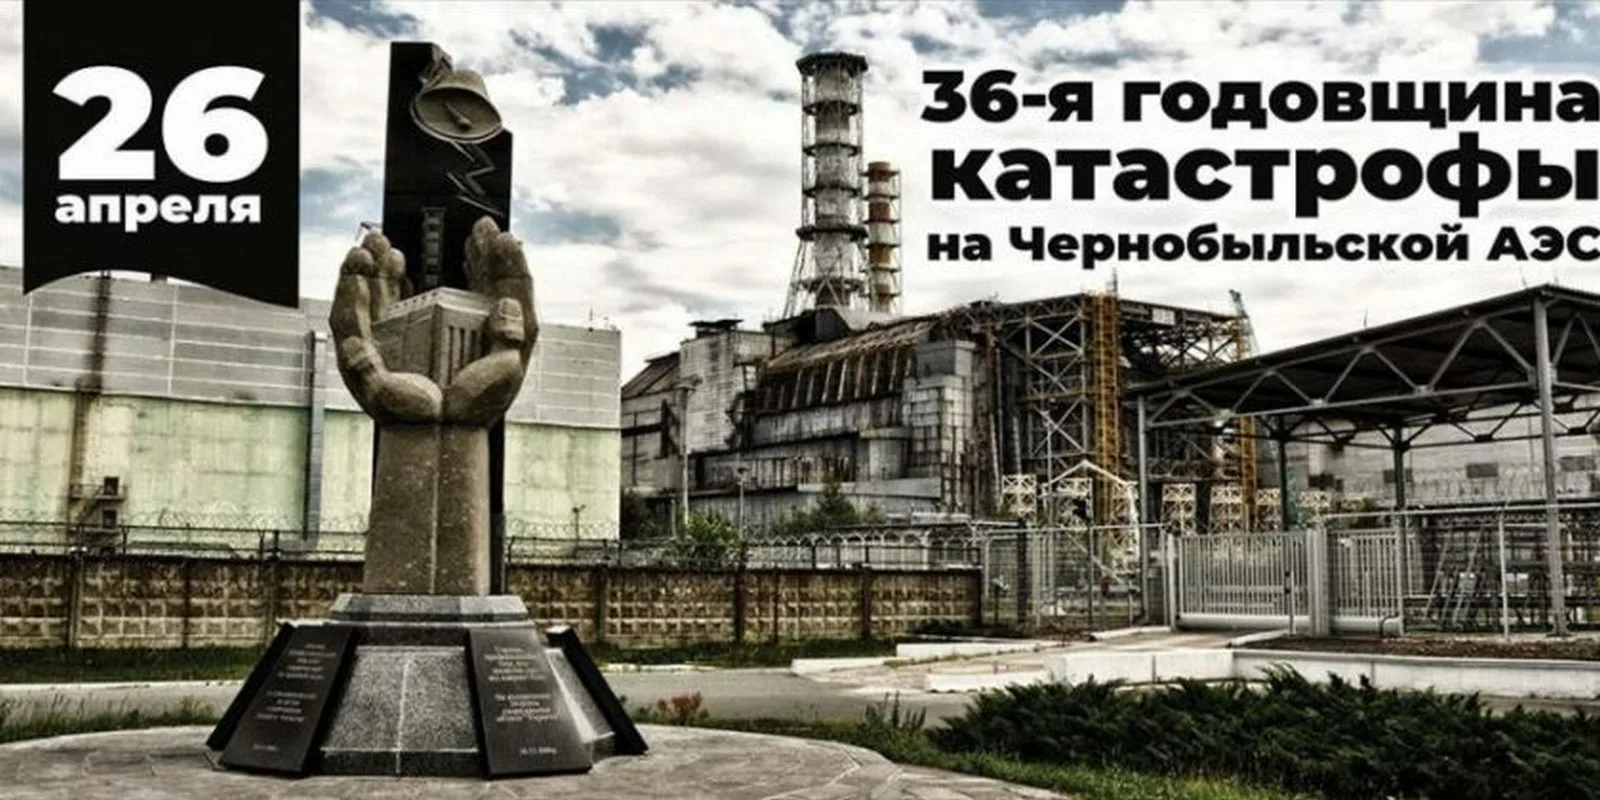 Чернобыльская аэс годовщина